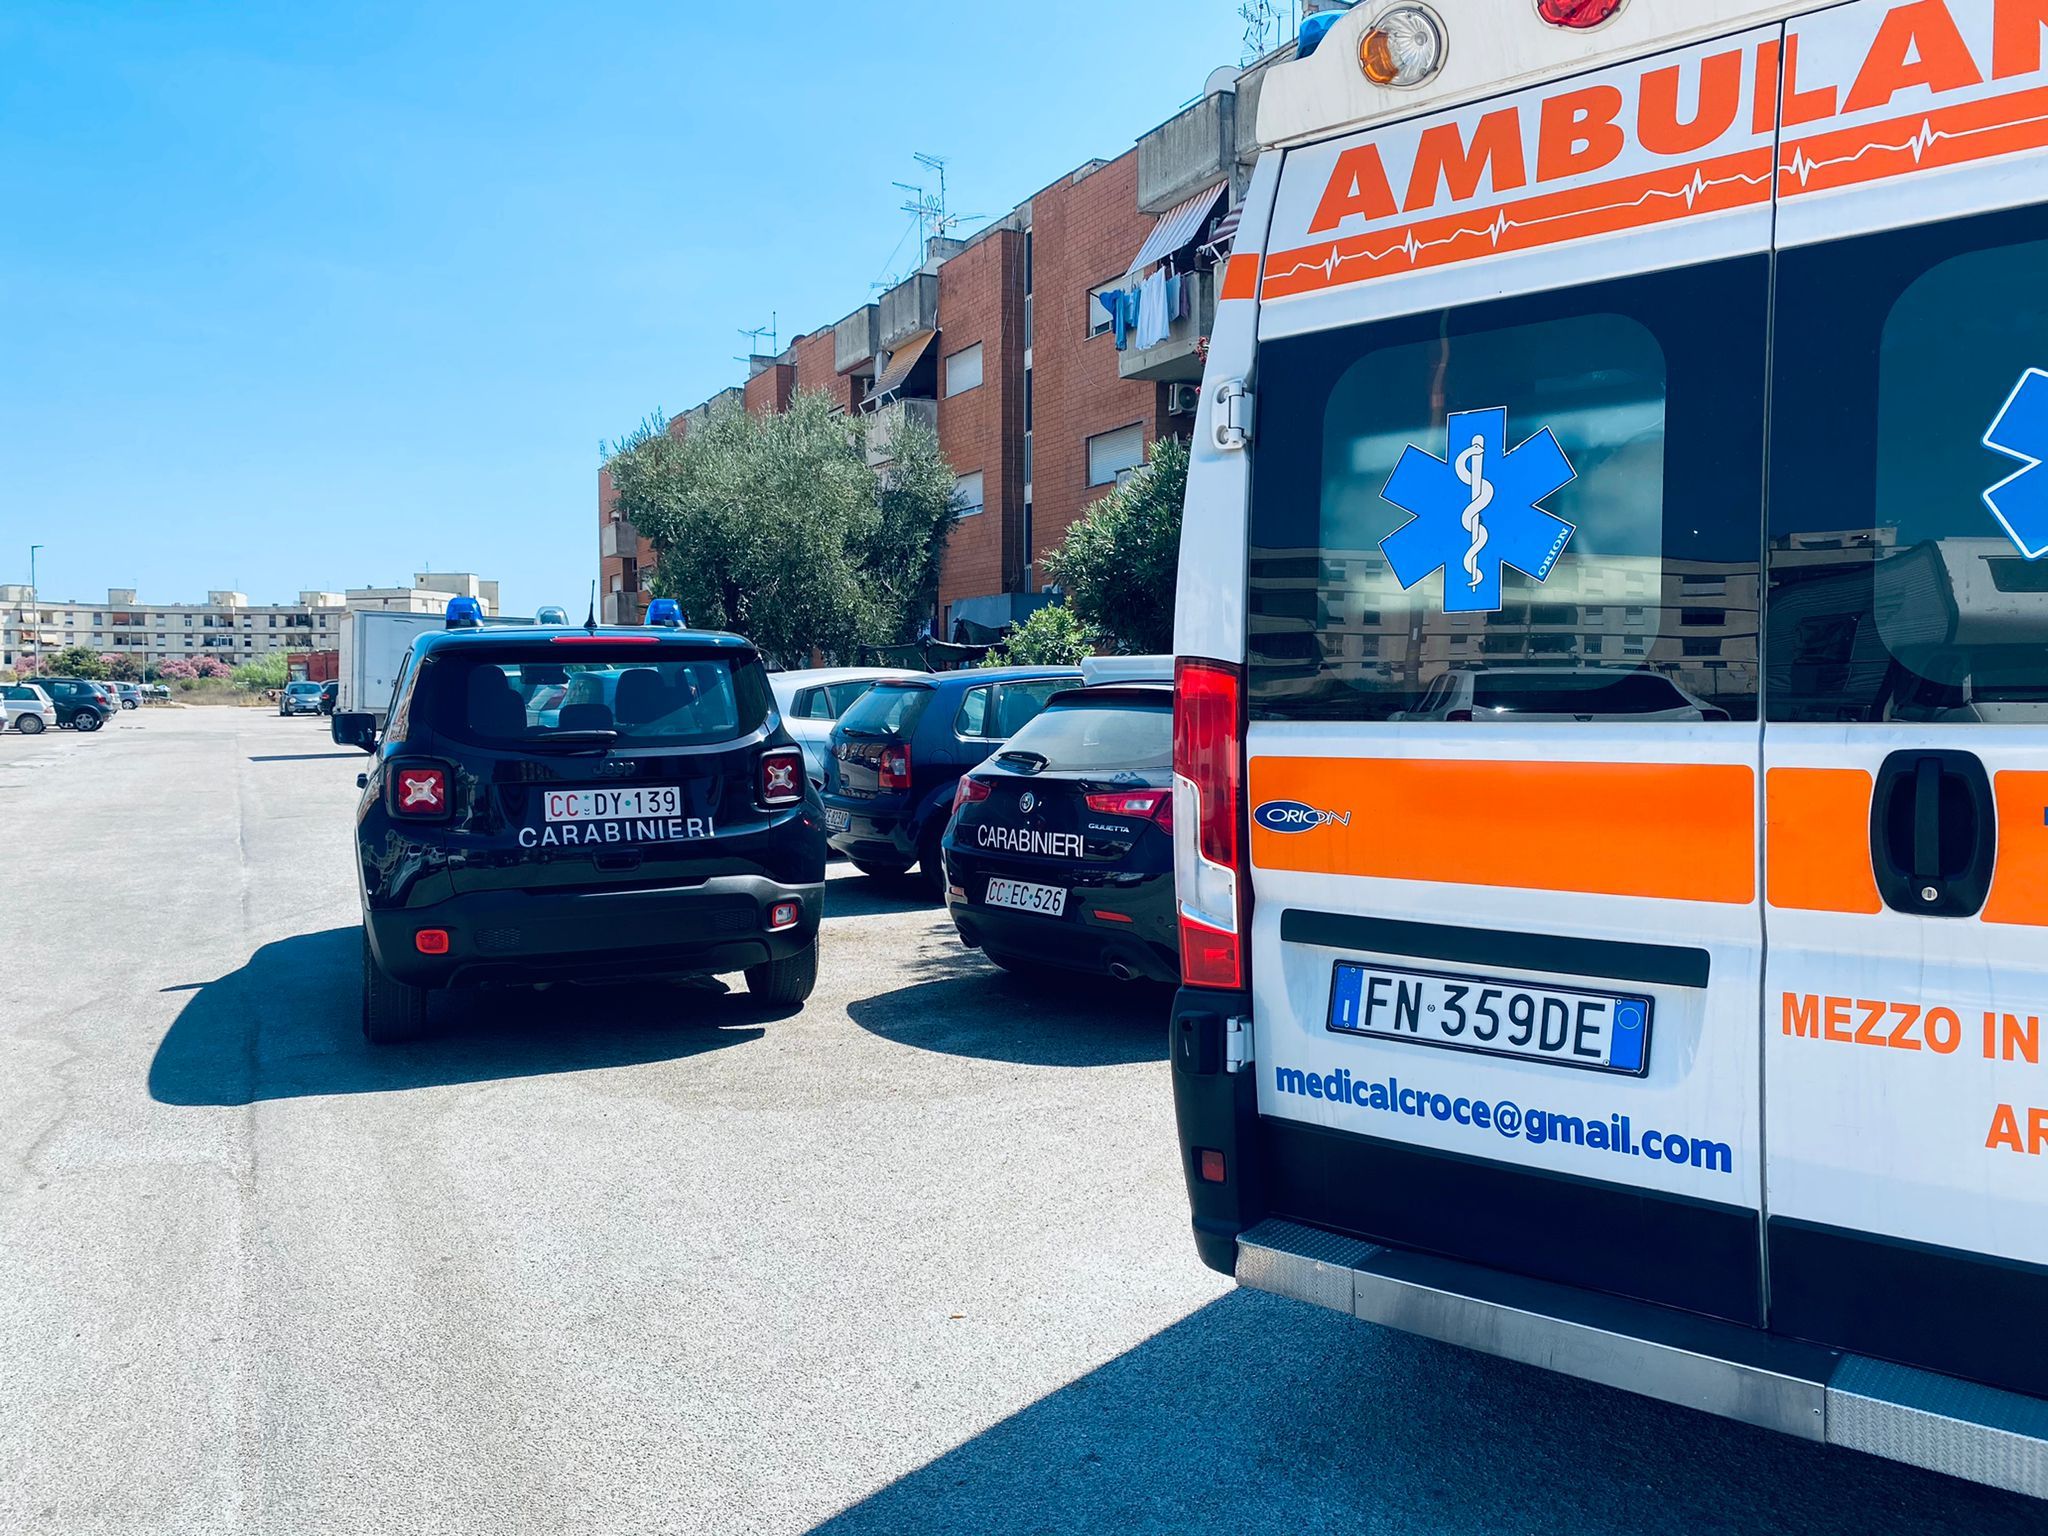 Carabinieri ambulanza per il ritrovamento 27enne morto in Via dei Fenicotteri a Ardea